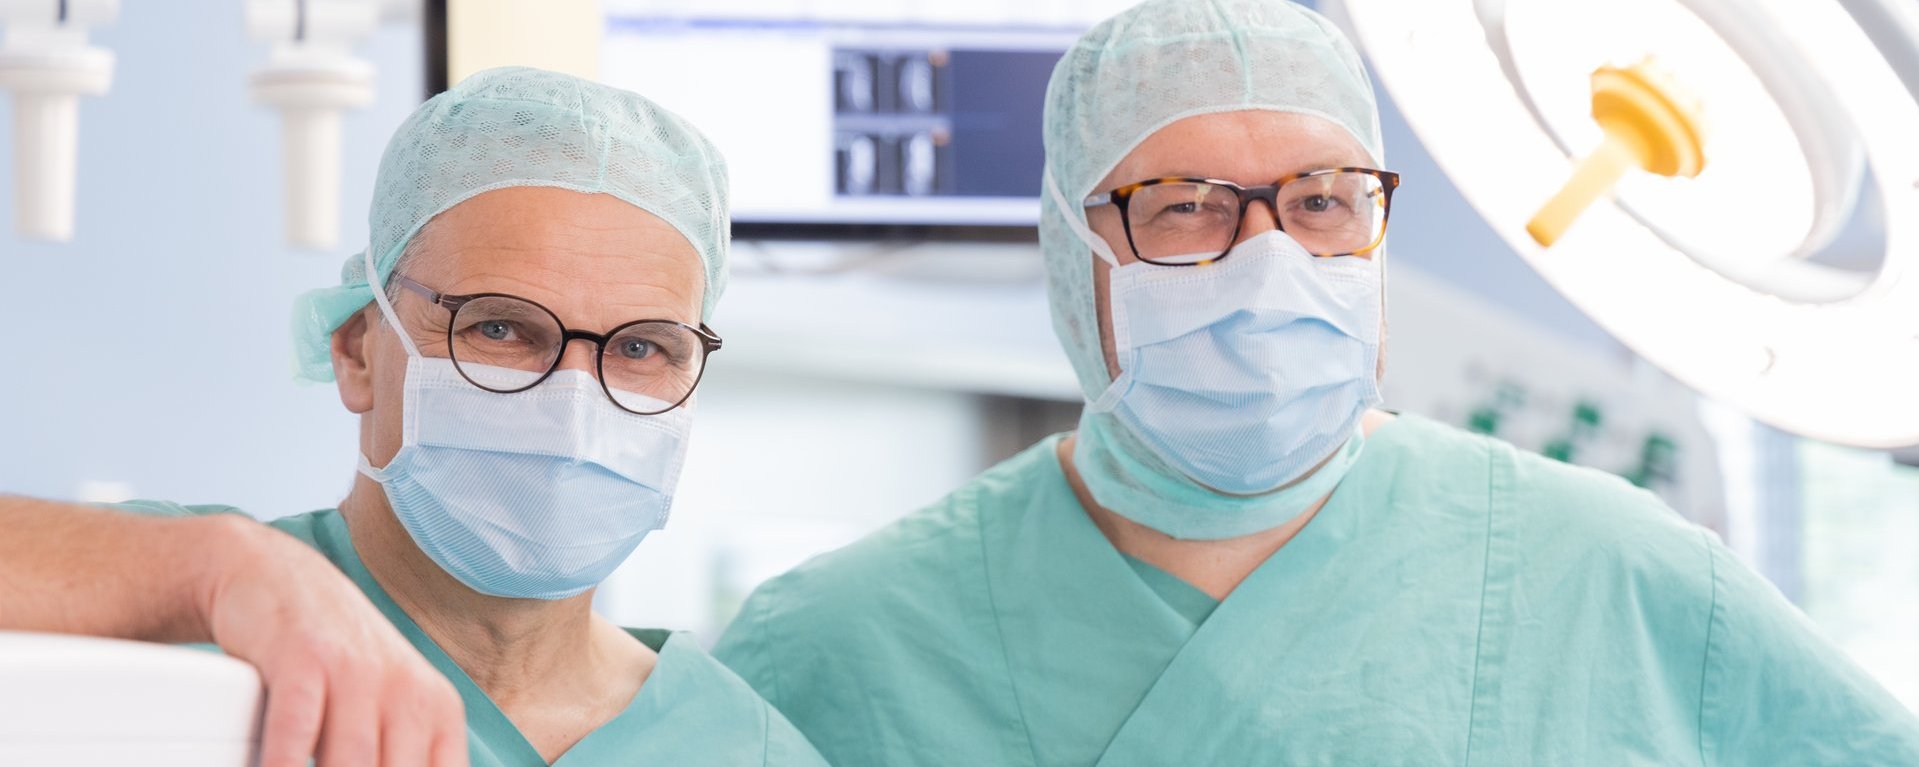 Dr. med. Roland Tines und Dr. med. Joachim Rogg, Chefärzte des Fachbereichs Gefäßchirurgie an der Klinik Immenstadt in Operationskleidung im OP-Saal